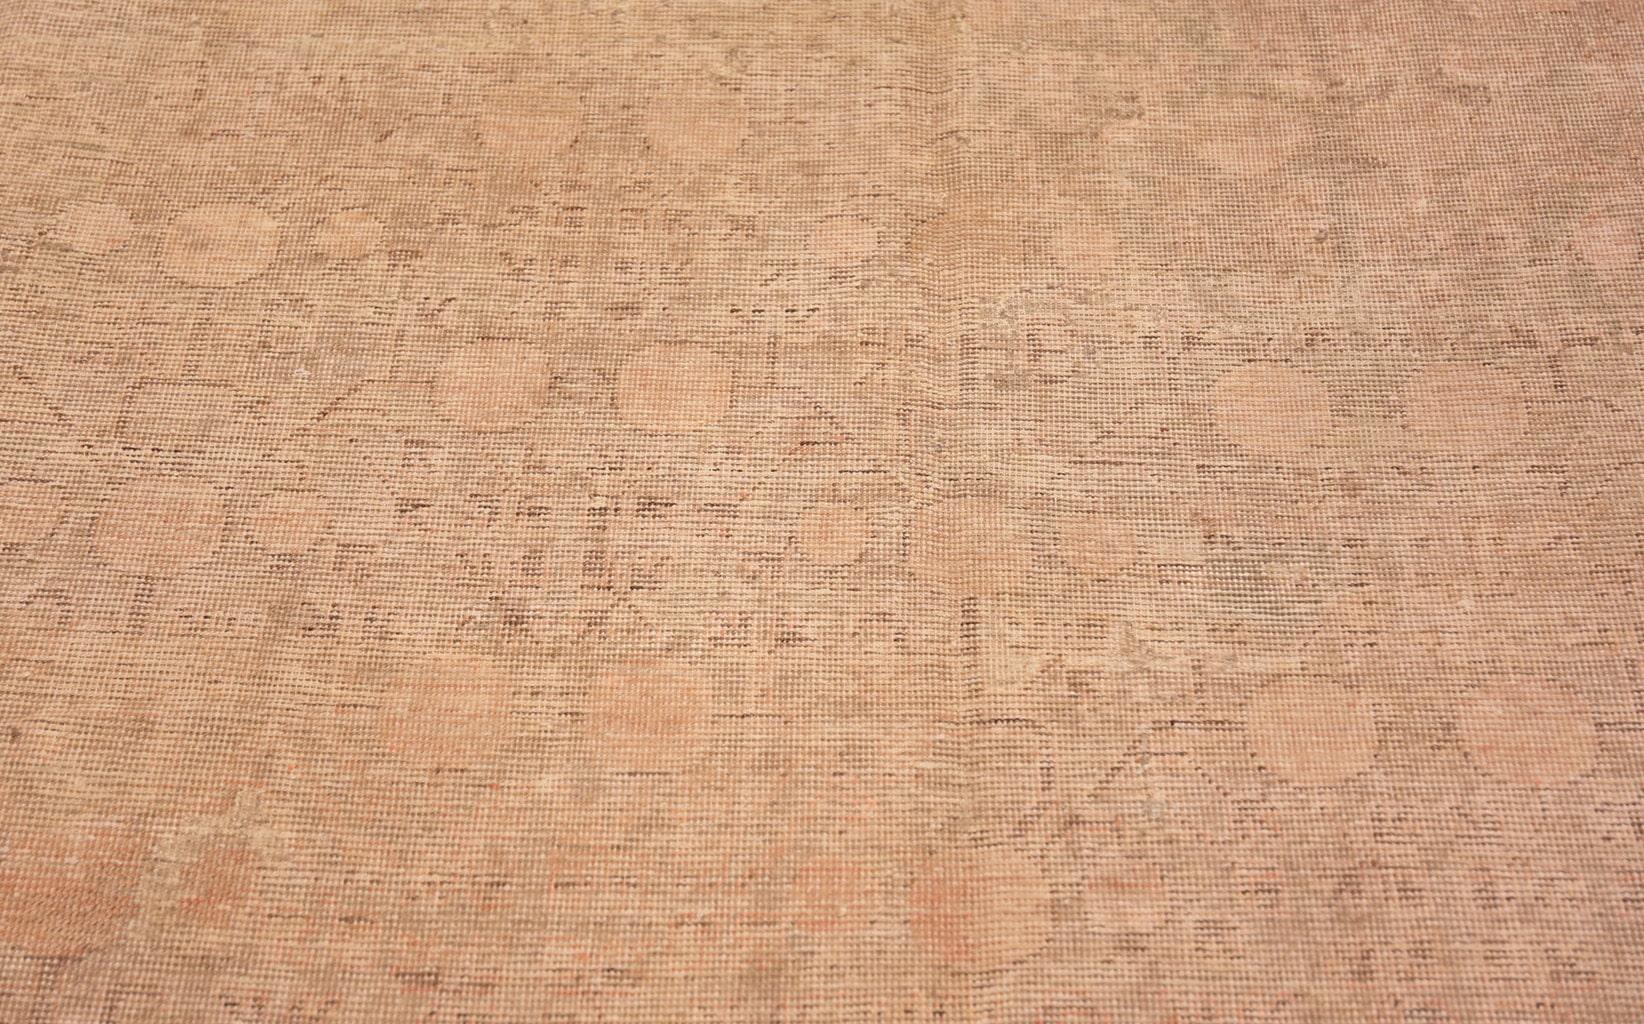 Magnifique tapis Khotan antique et décoratif, Pays d'origine : Turkestan oriental, Circa date : Début du 20ème siècle. Taille : 8 ft x 16 ft (2,44 m x 4,88 m)

